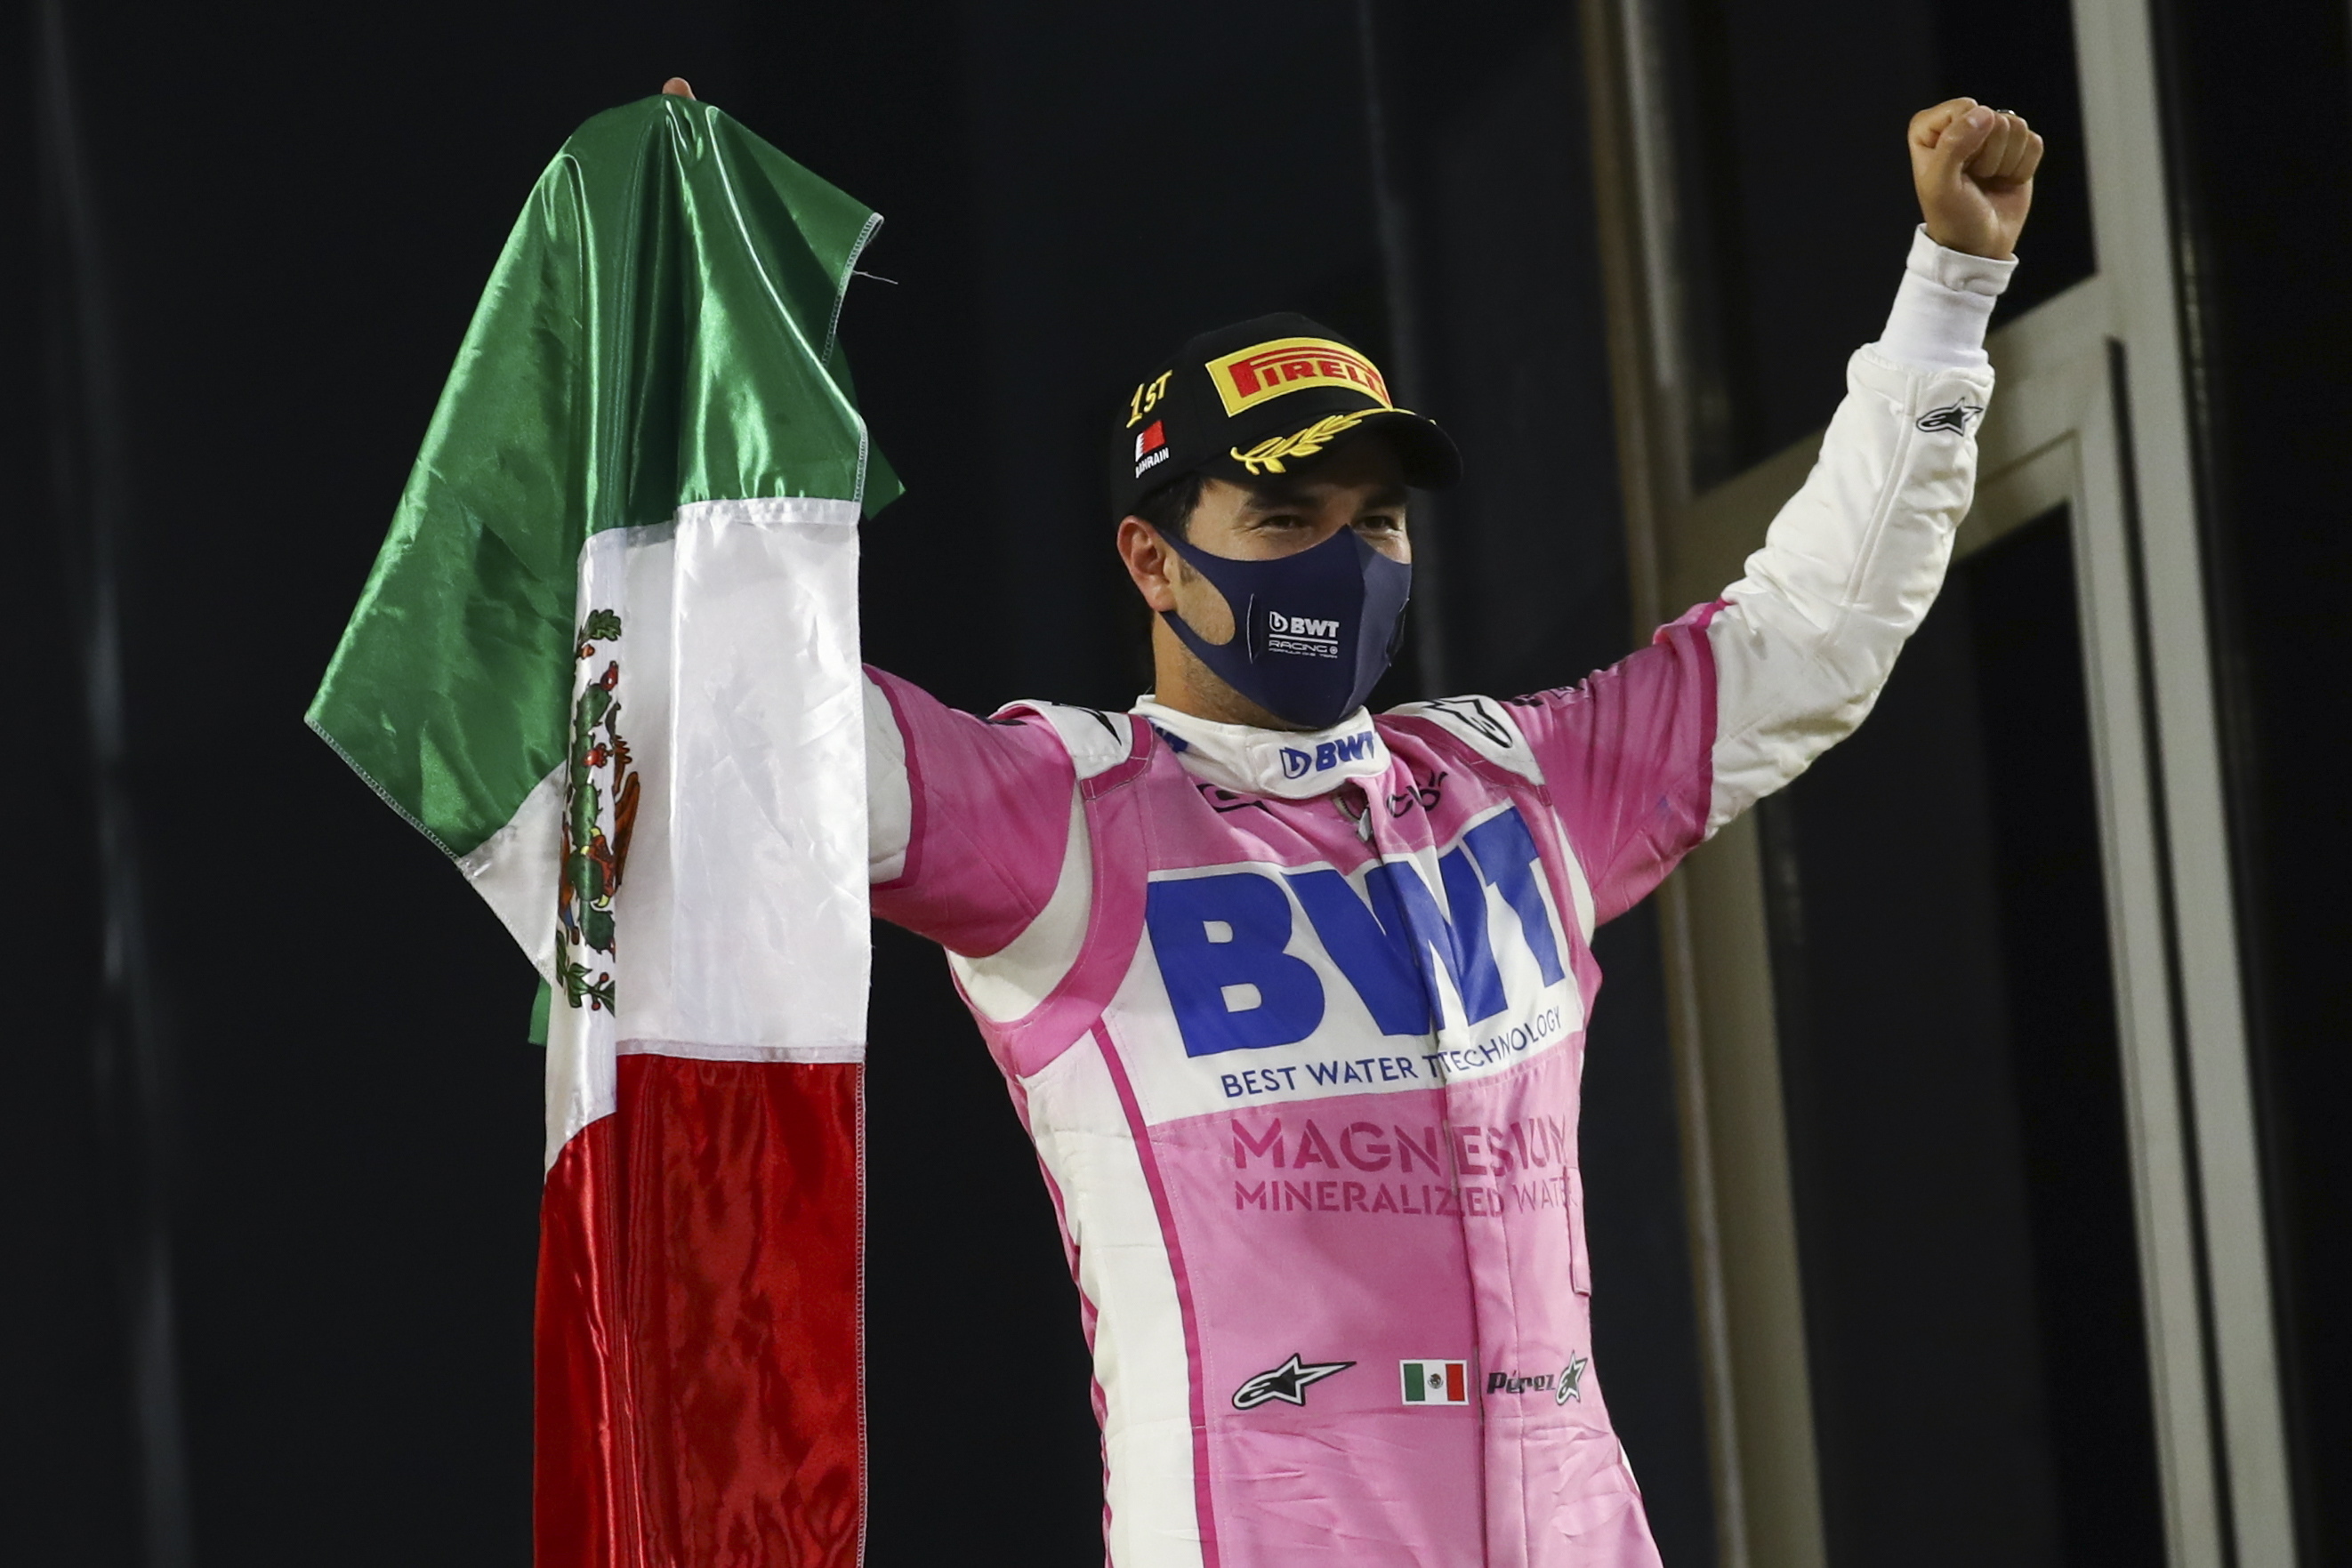 El corredor mexicano de Fórmula Uno Sergio Pérez, BWT Racing Point, celebra al ganar el Gran Premio de Sakhir el 6 de diciembre de 2020 en el Circuito International de Baréin cerca a Manama (Baréin). EFE/Bryn Lennon POOL/Archivo
